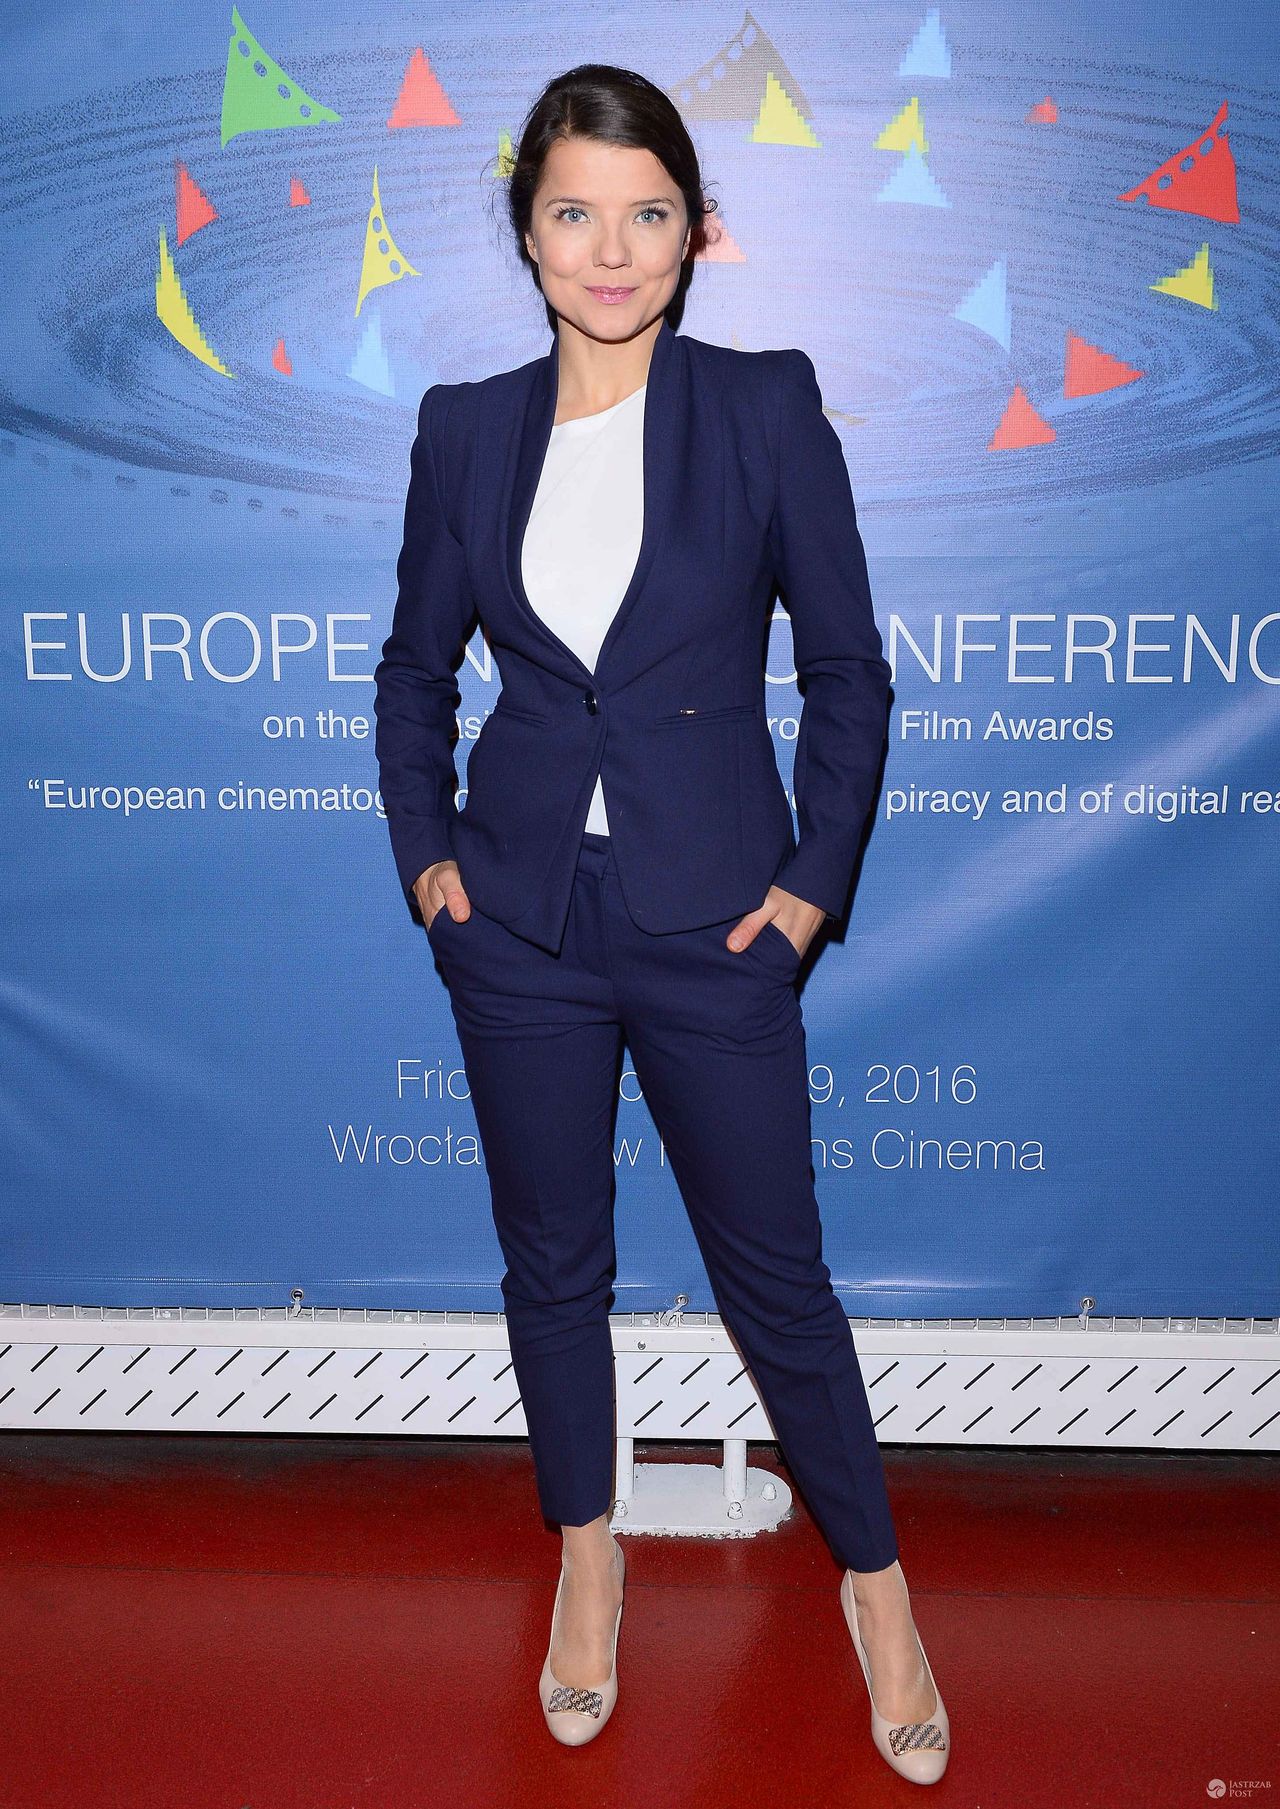 Joanna Jabłczyńska - konferencja Europejskiej kinomatografii wobec piractwa